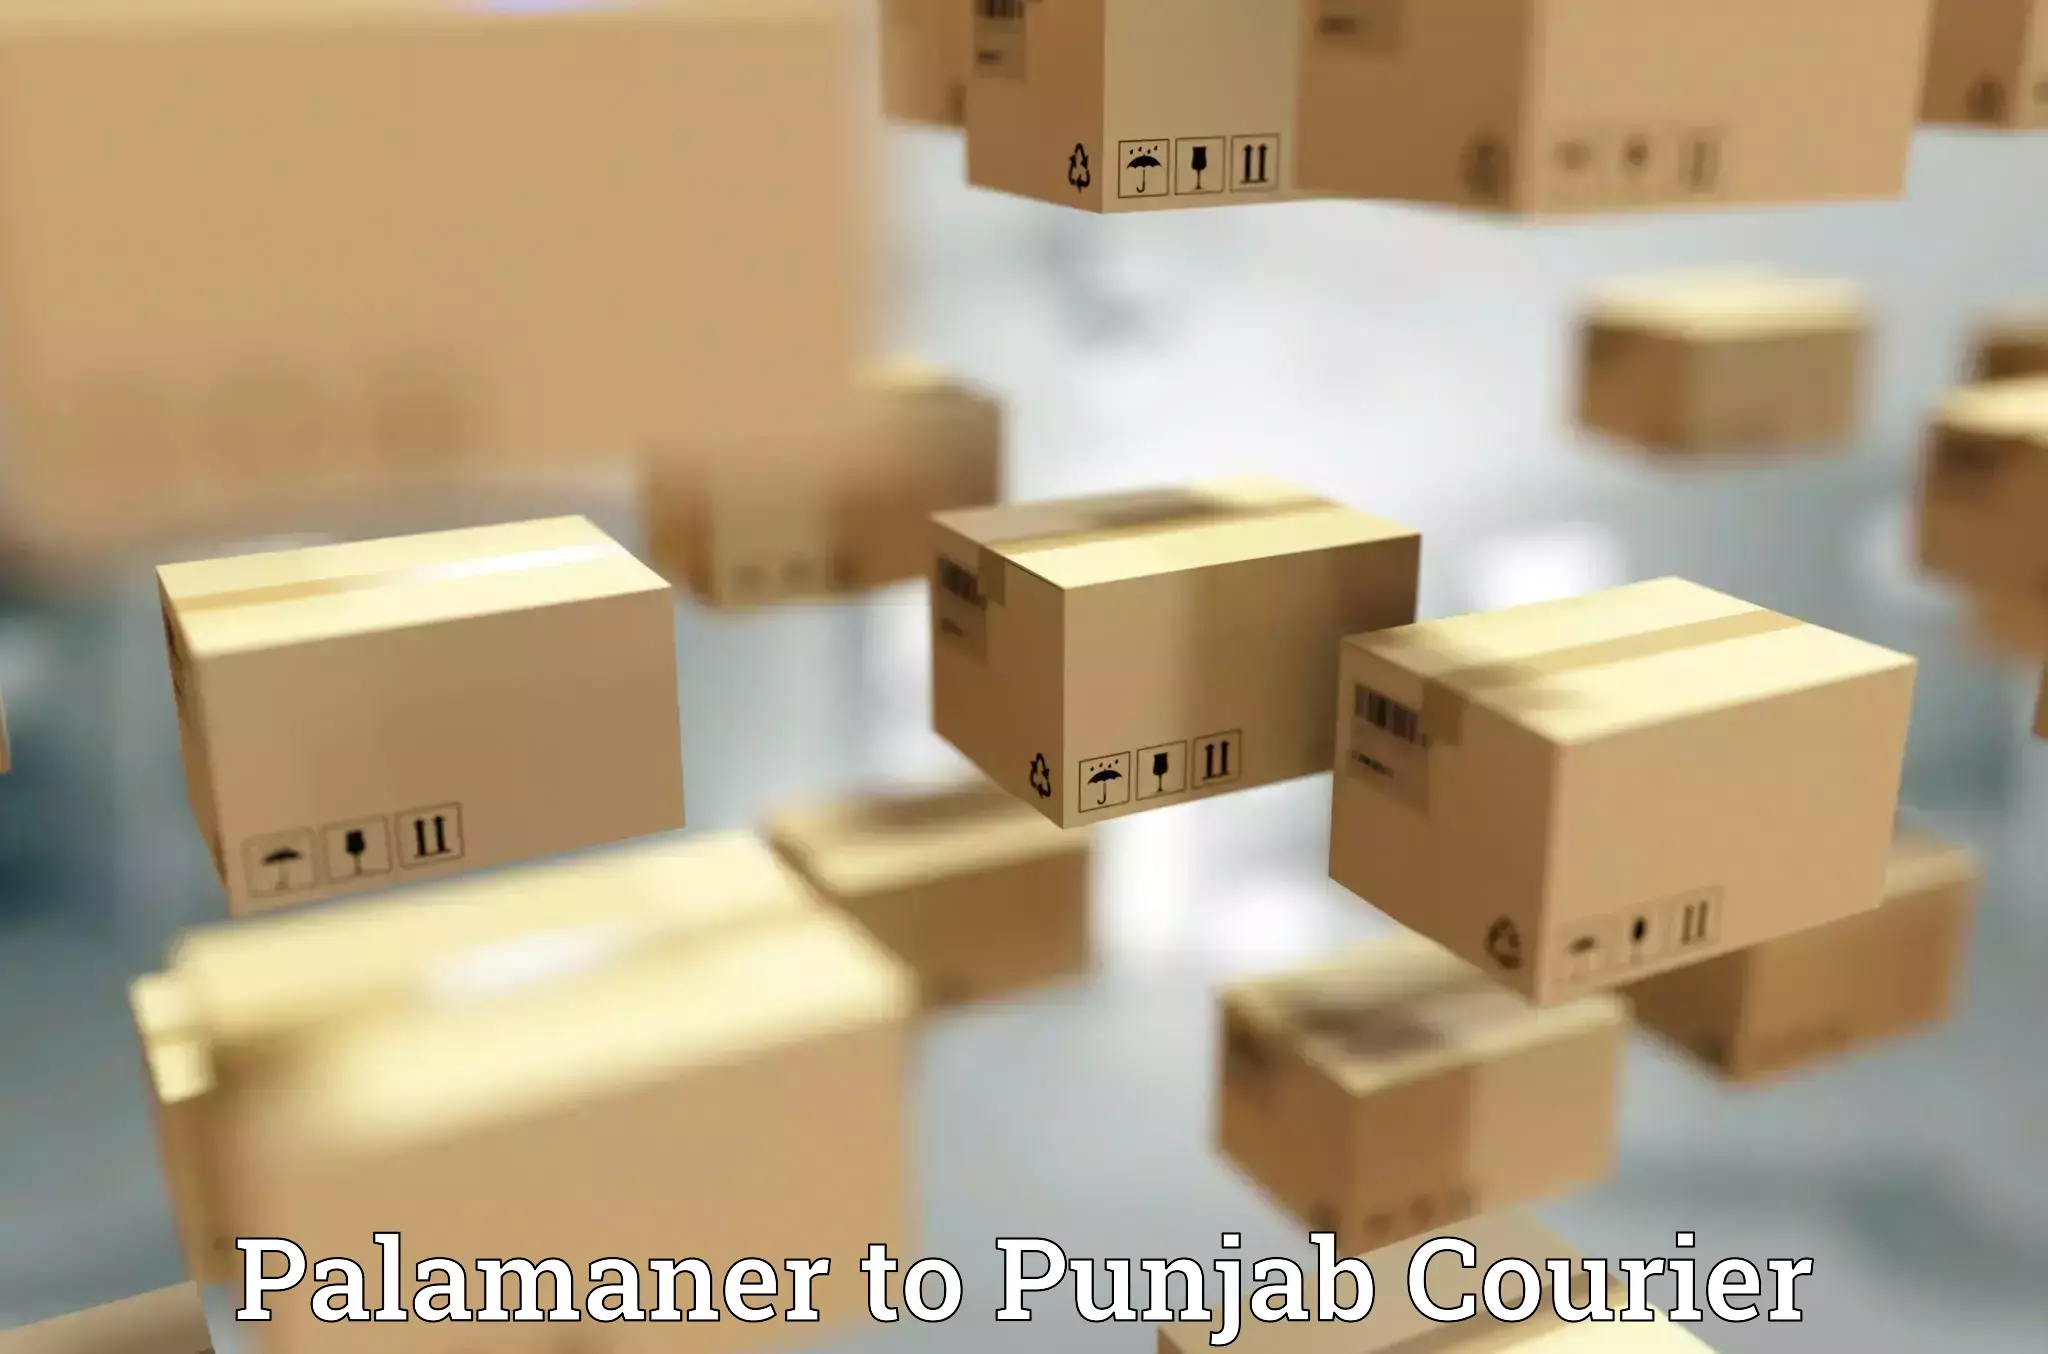 Same-day delivery options Palamaner to Jalandhar